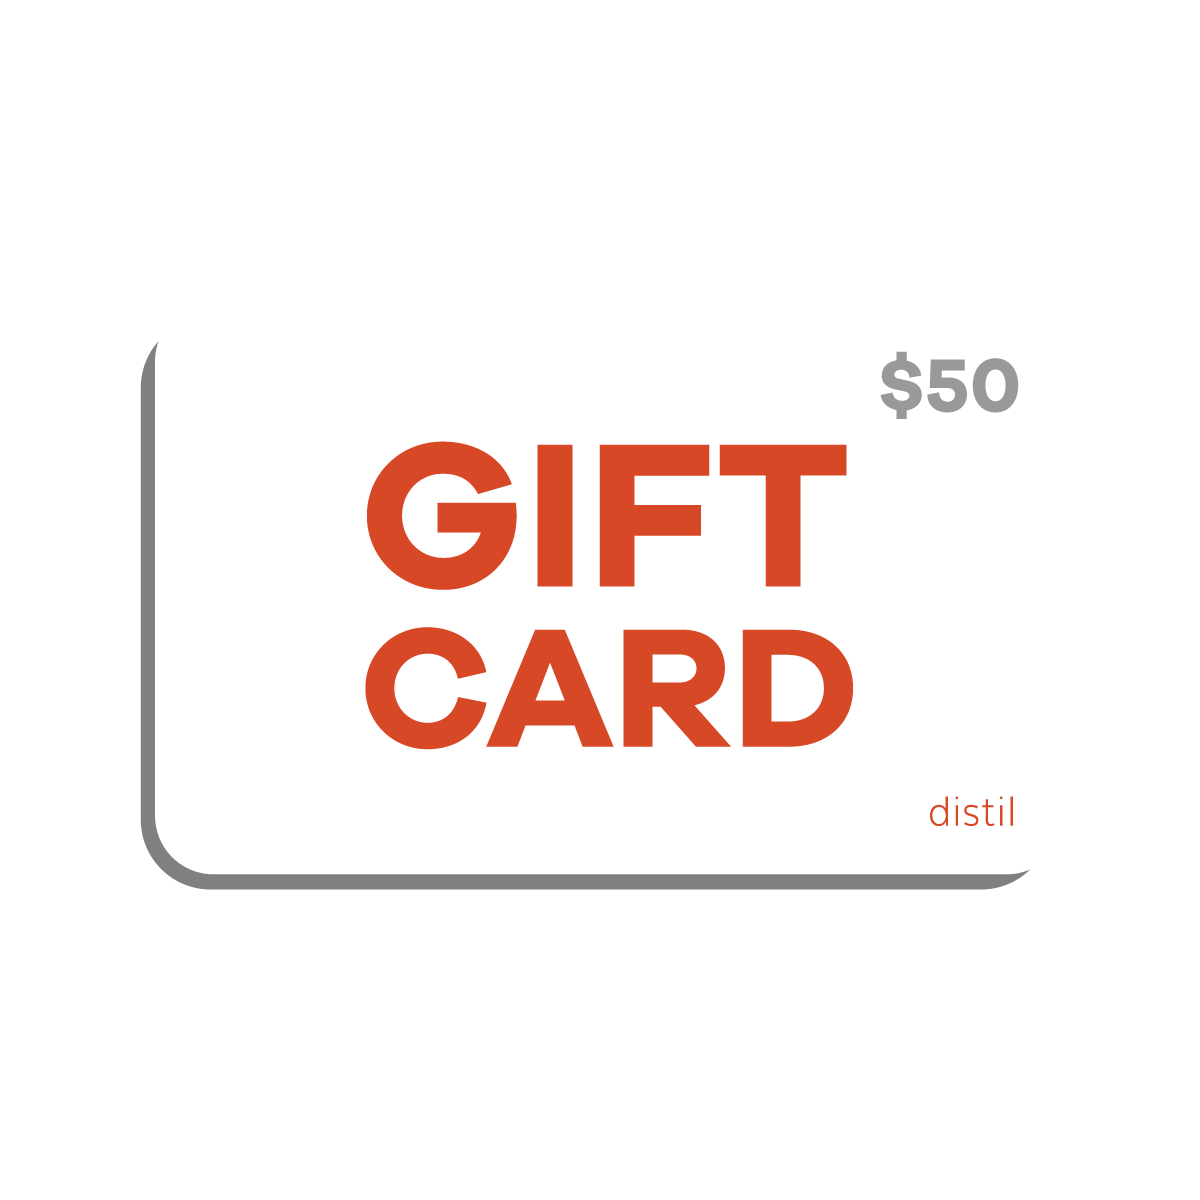 A digital Distil Union gift card worth $50